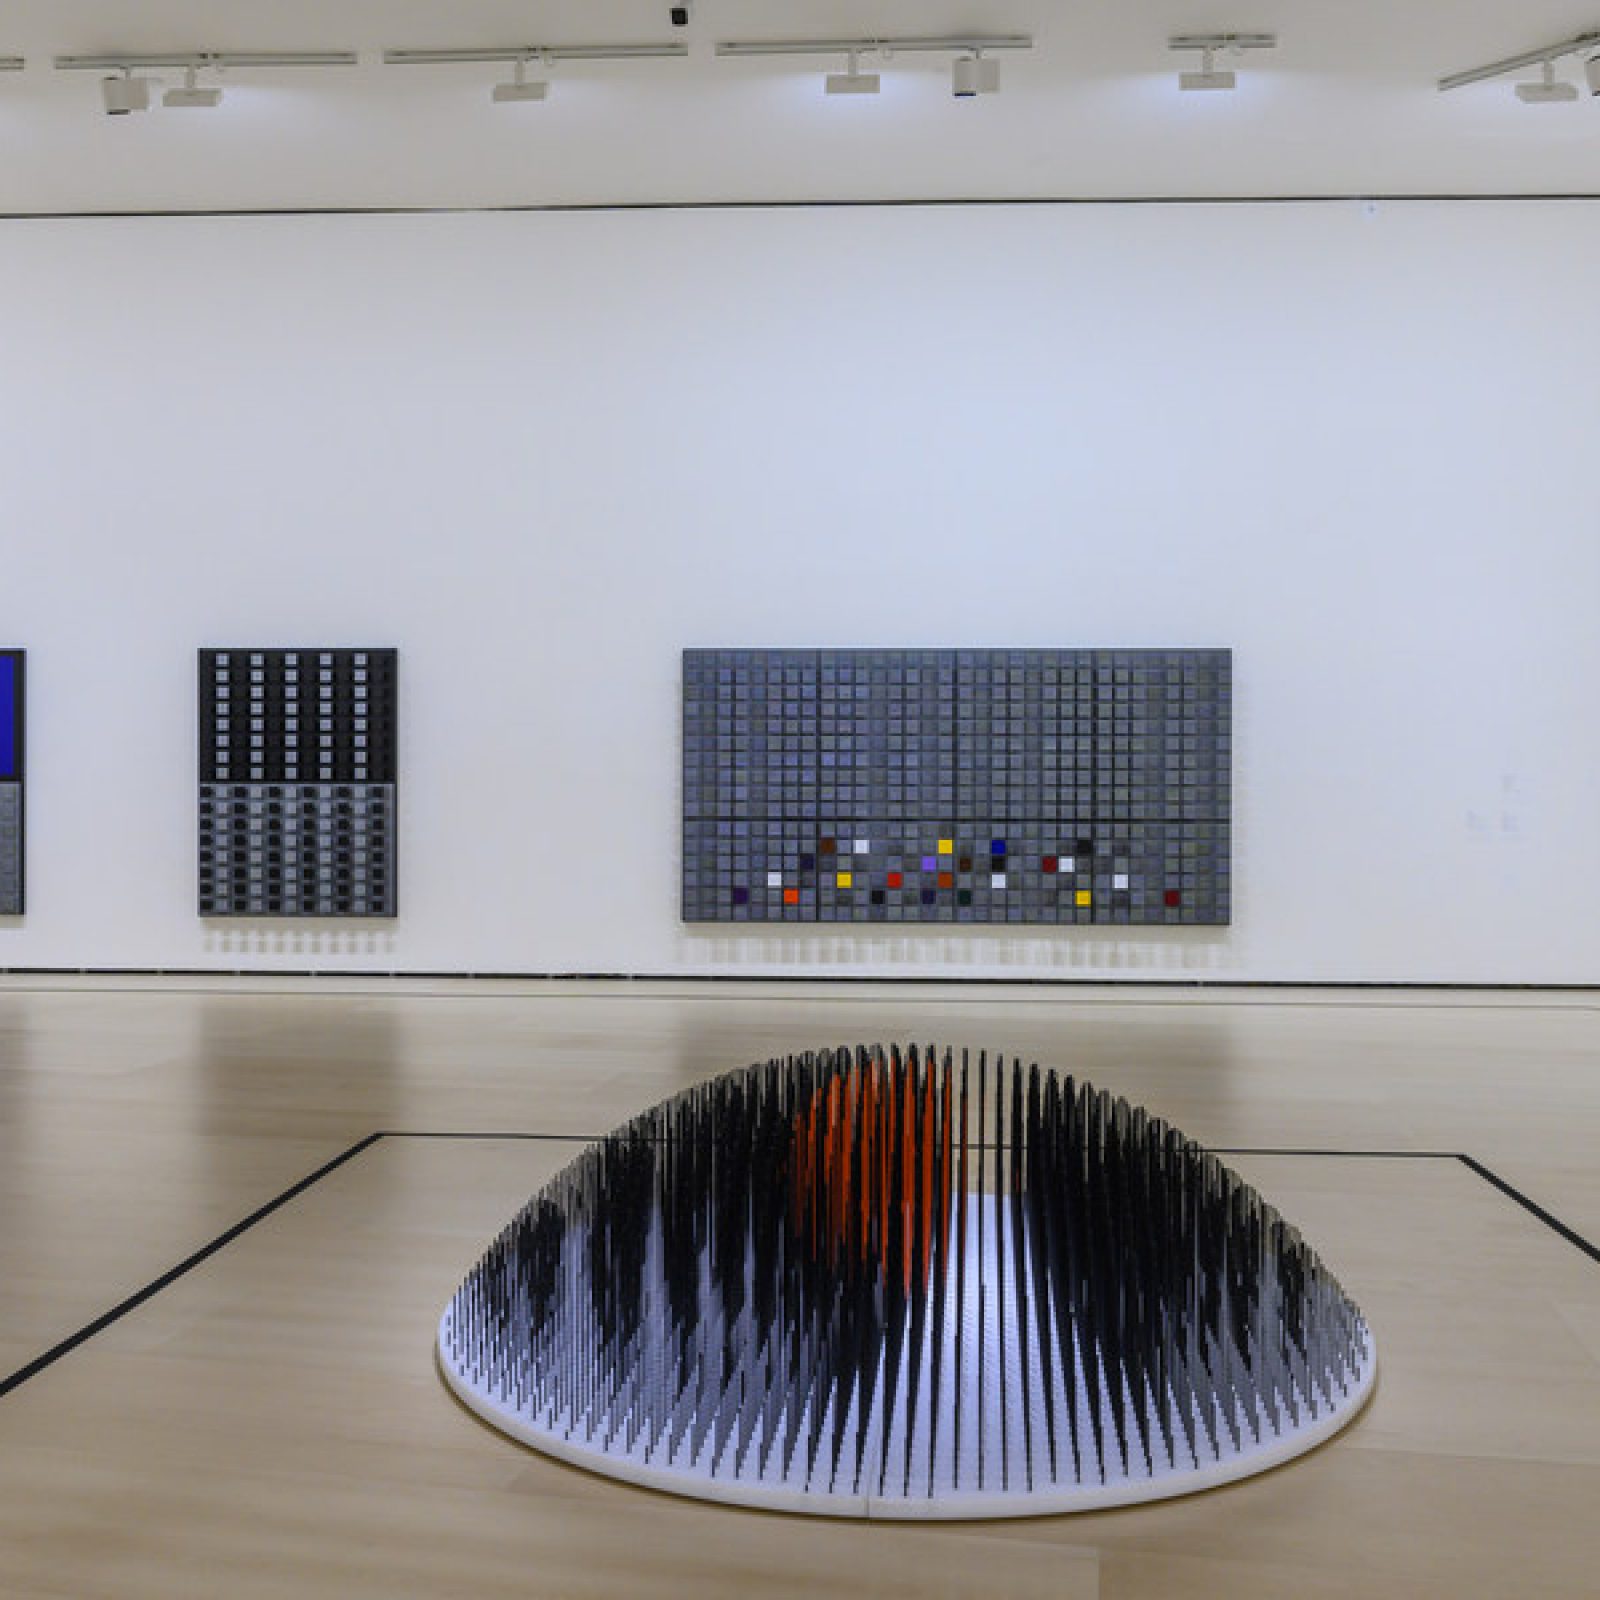 Vista de la exposición "Soto. La cuarta dimensión", en el Museo Guggenheim Bilbao, España, 2019-2020. Foto cortesía del museo.